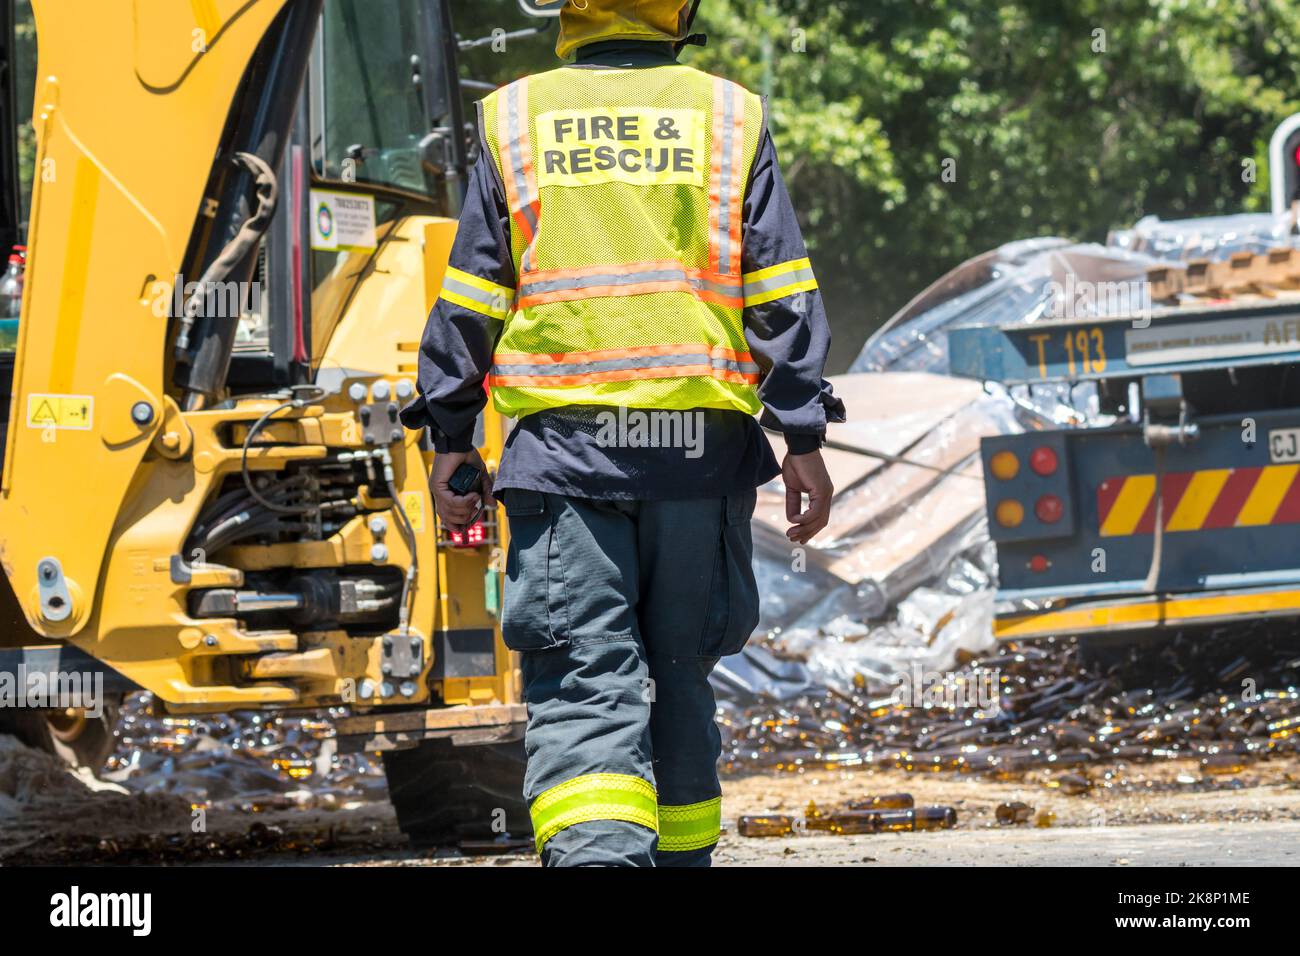 Bei einem Verkehrsunfall, bei dem ein Schnellmesserwagen in Kapstadt, Südafrika, seine Ladung verlor, trägt der Feuerwehr- und Rettungsdienst eine gut sichtbare Kleidung Stockfoto